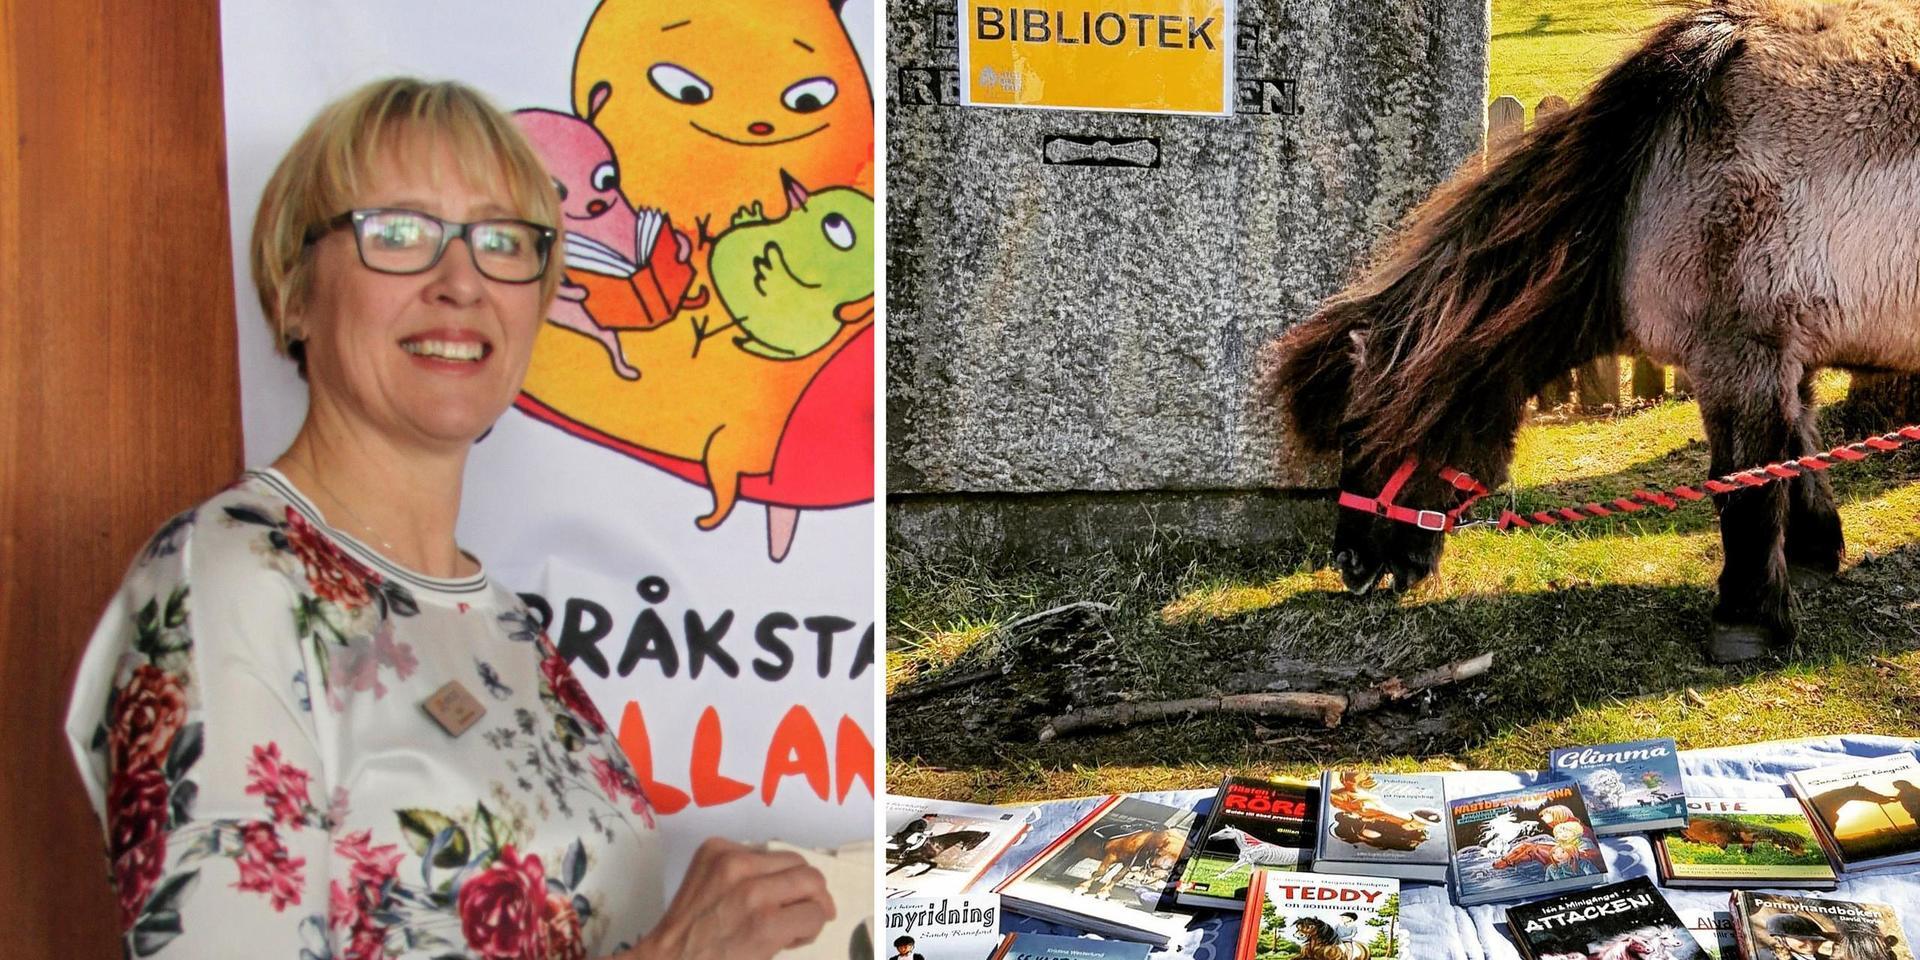 Hyltebibliotekens språkstartare Åsa Engberg har drivit pop up-biblioteket för barn tillsammans med litteraturpedagogen Sanna Svensson. Idén går ut på att kombinera boklån och gos med ponnyhästar. Det är också en social aktivitet som går att genomföra i coronatider.